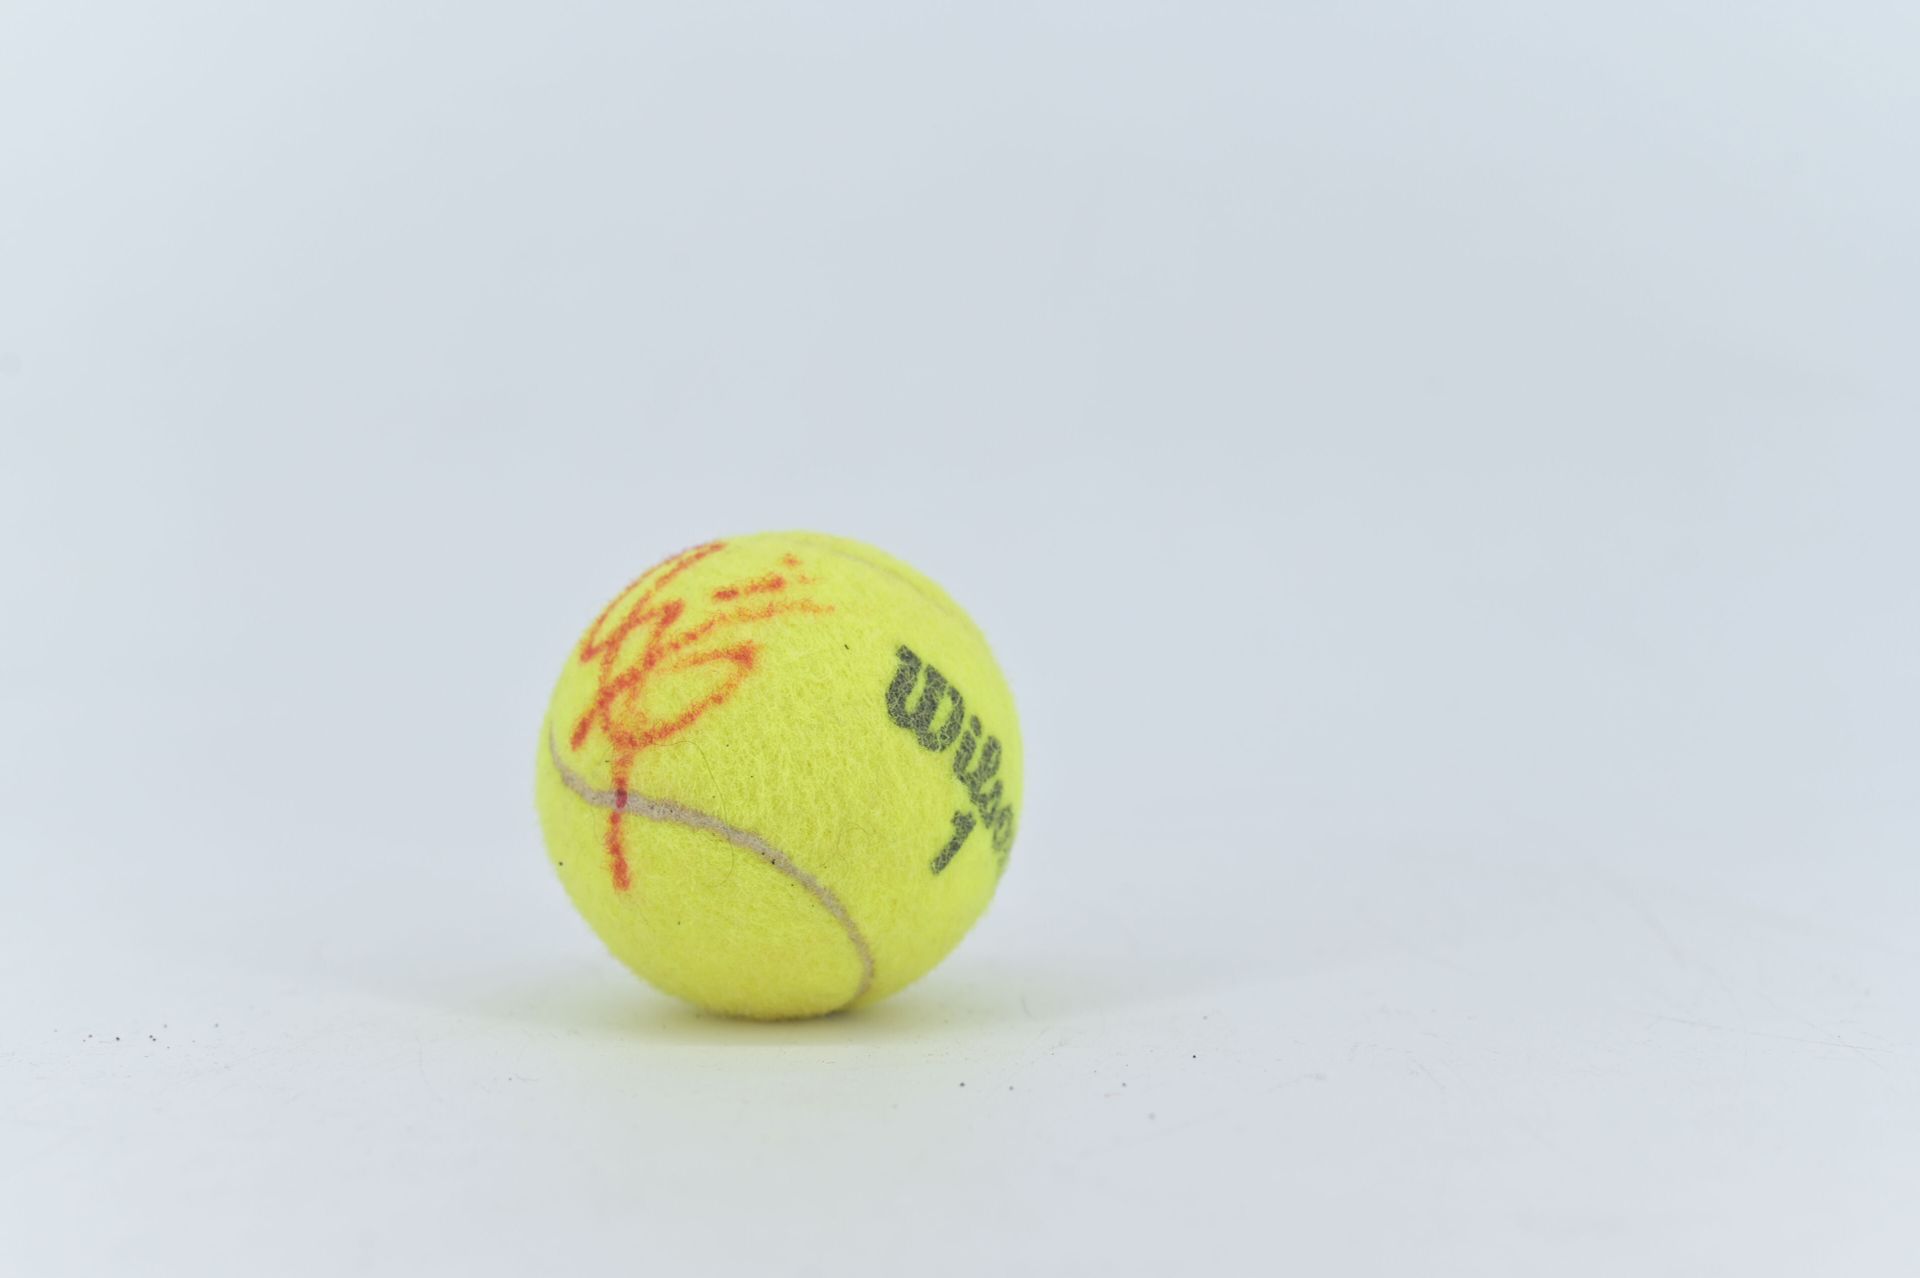 Null Ein Wilson Roland Garros 2023 Ball, signiert von Gilles Simon 2023

Anmerku&hellip;